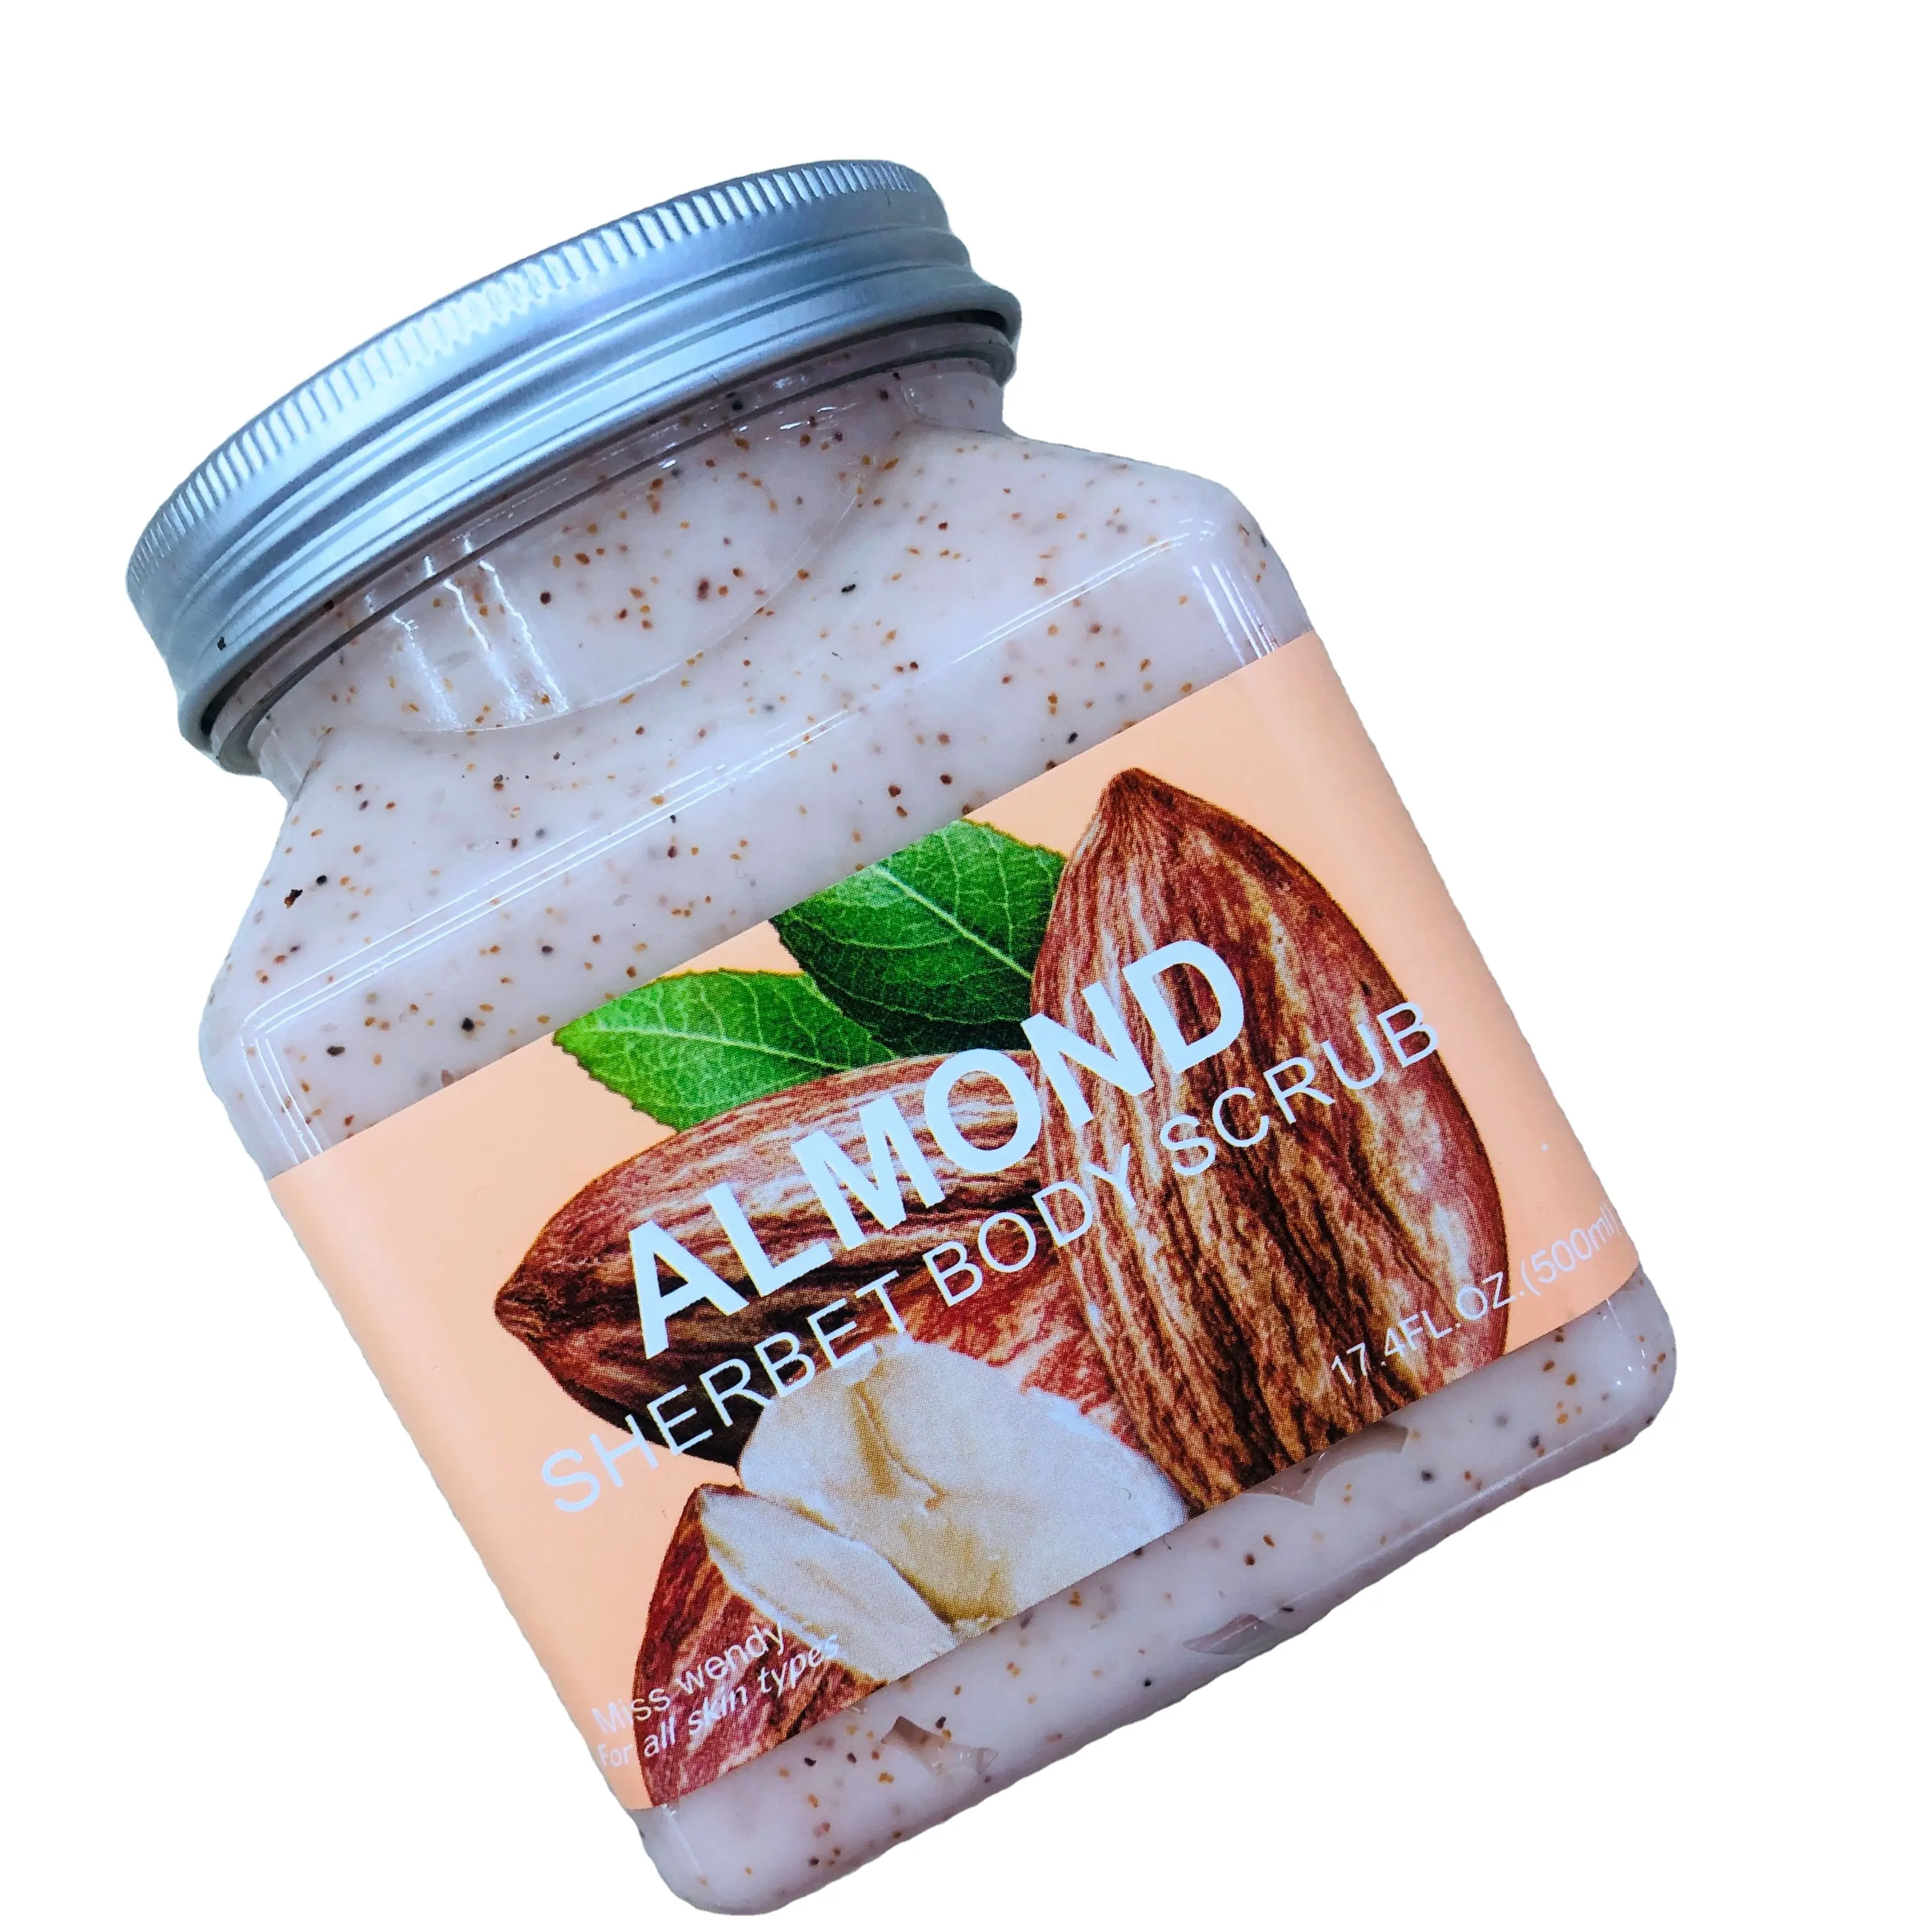 Crema exfoliante de almendra, frasco Exfoliante para limpieza corporal, 500ml, venta al por mayor de fábrica